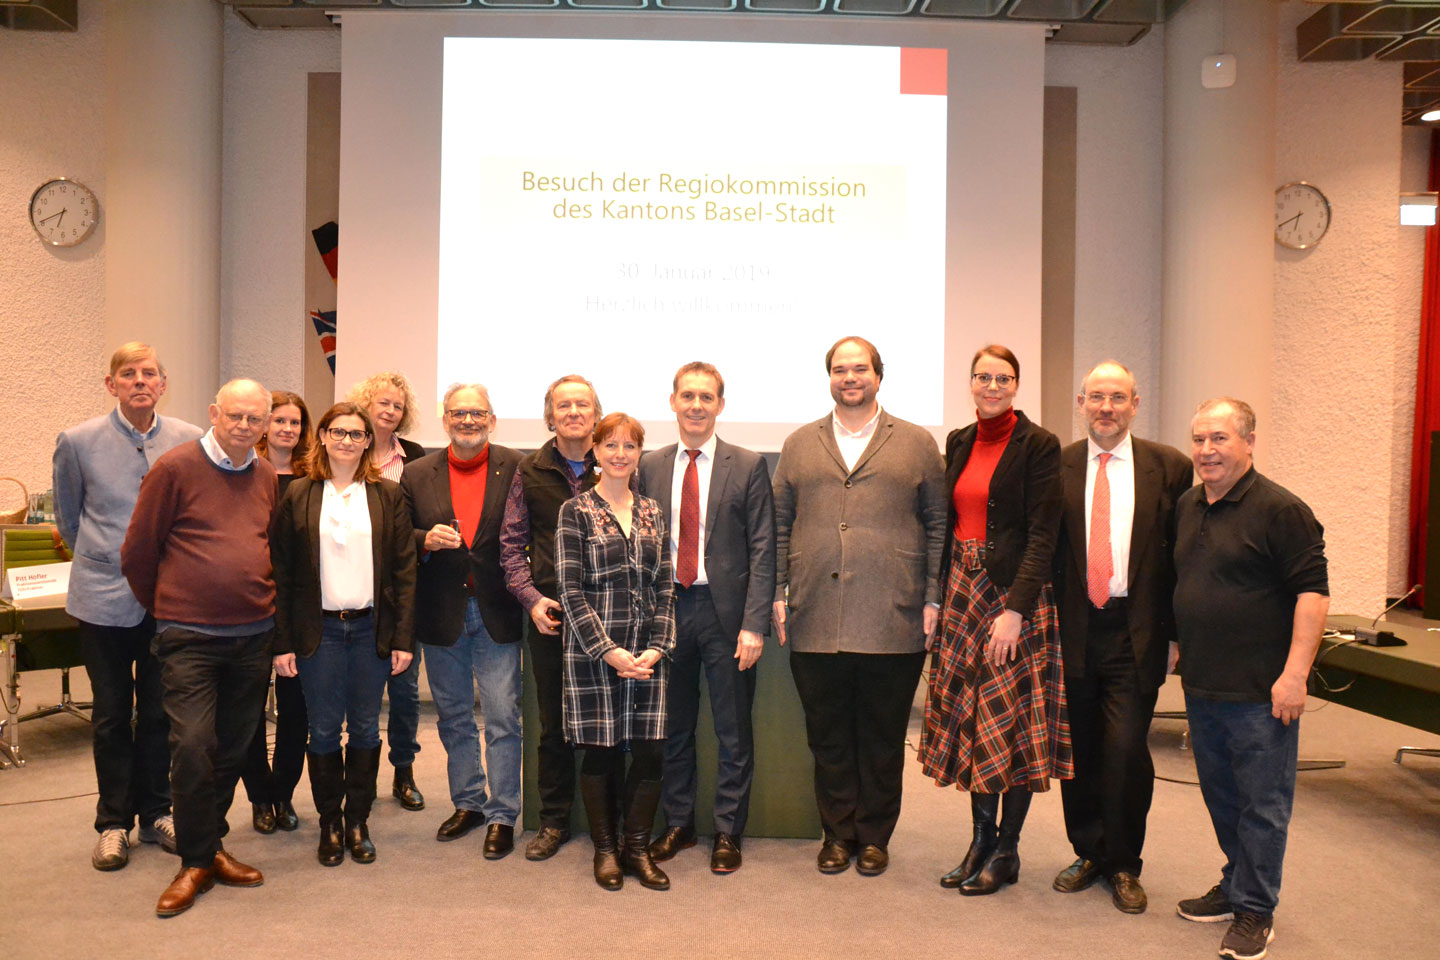 Oberbürgermeister Jörg Lutz und Bürgermeisterin Monika Neuhöfer-Avdić mit Mitgliedern der Regiokommission des Kantons Basel-Stadt